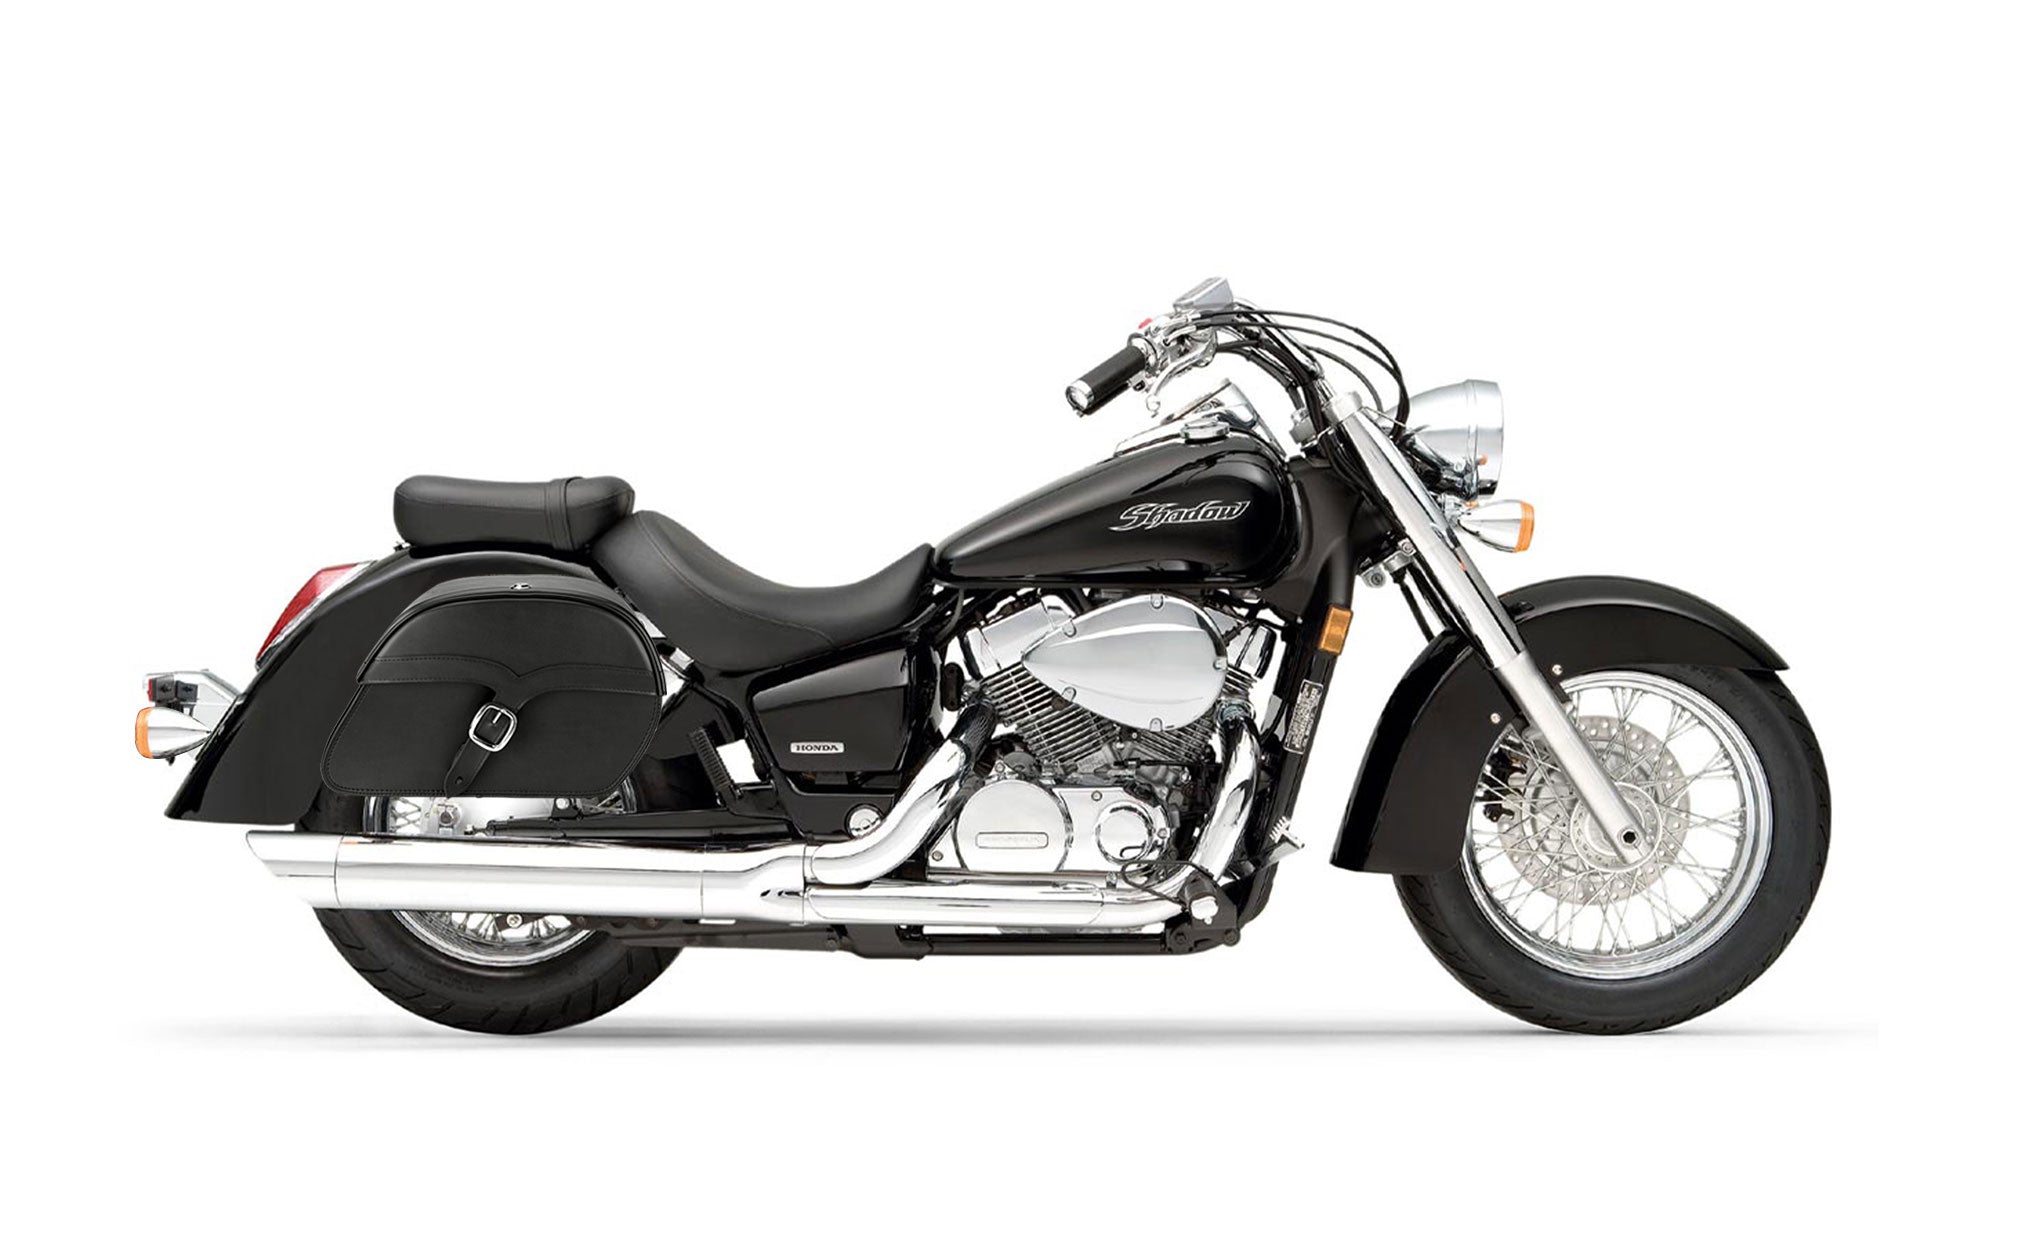 Viking Vintage Medium Honda Shadow 750 Aero Leather Motorcycle Saddlebags on Bike Photo @expand